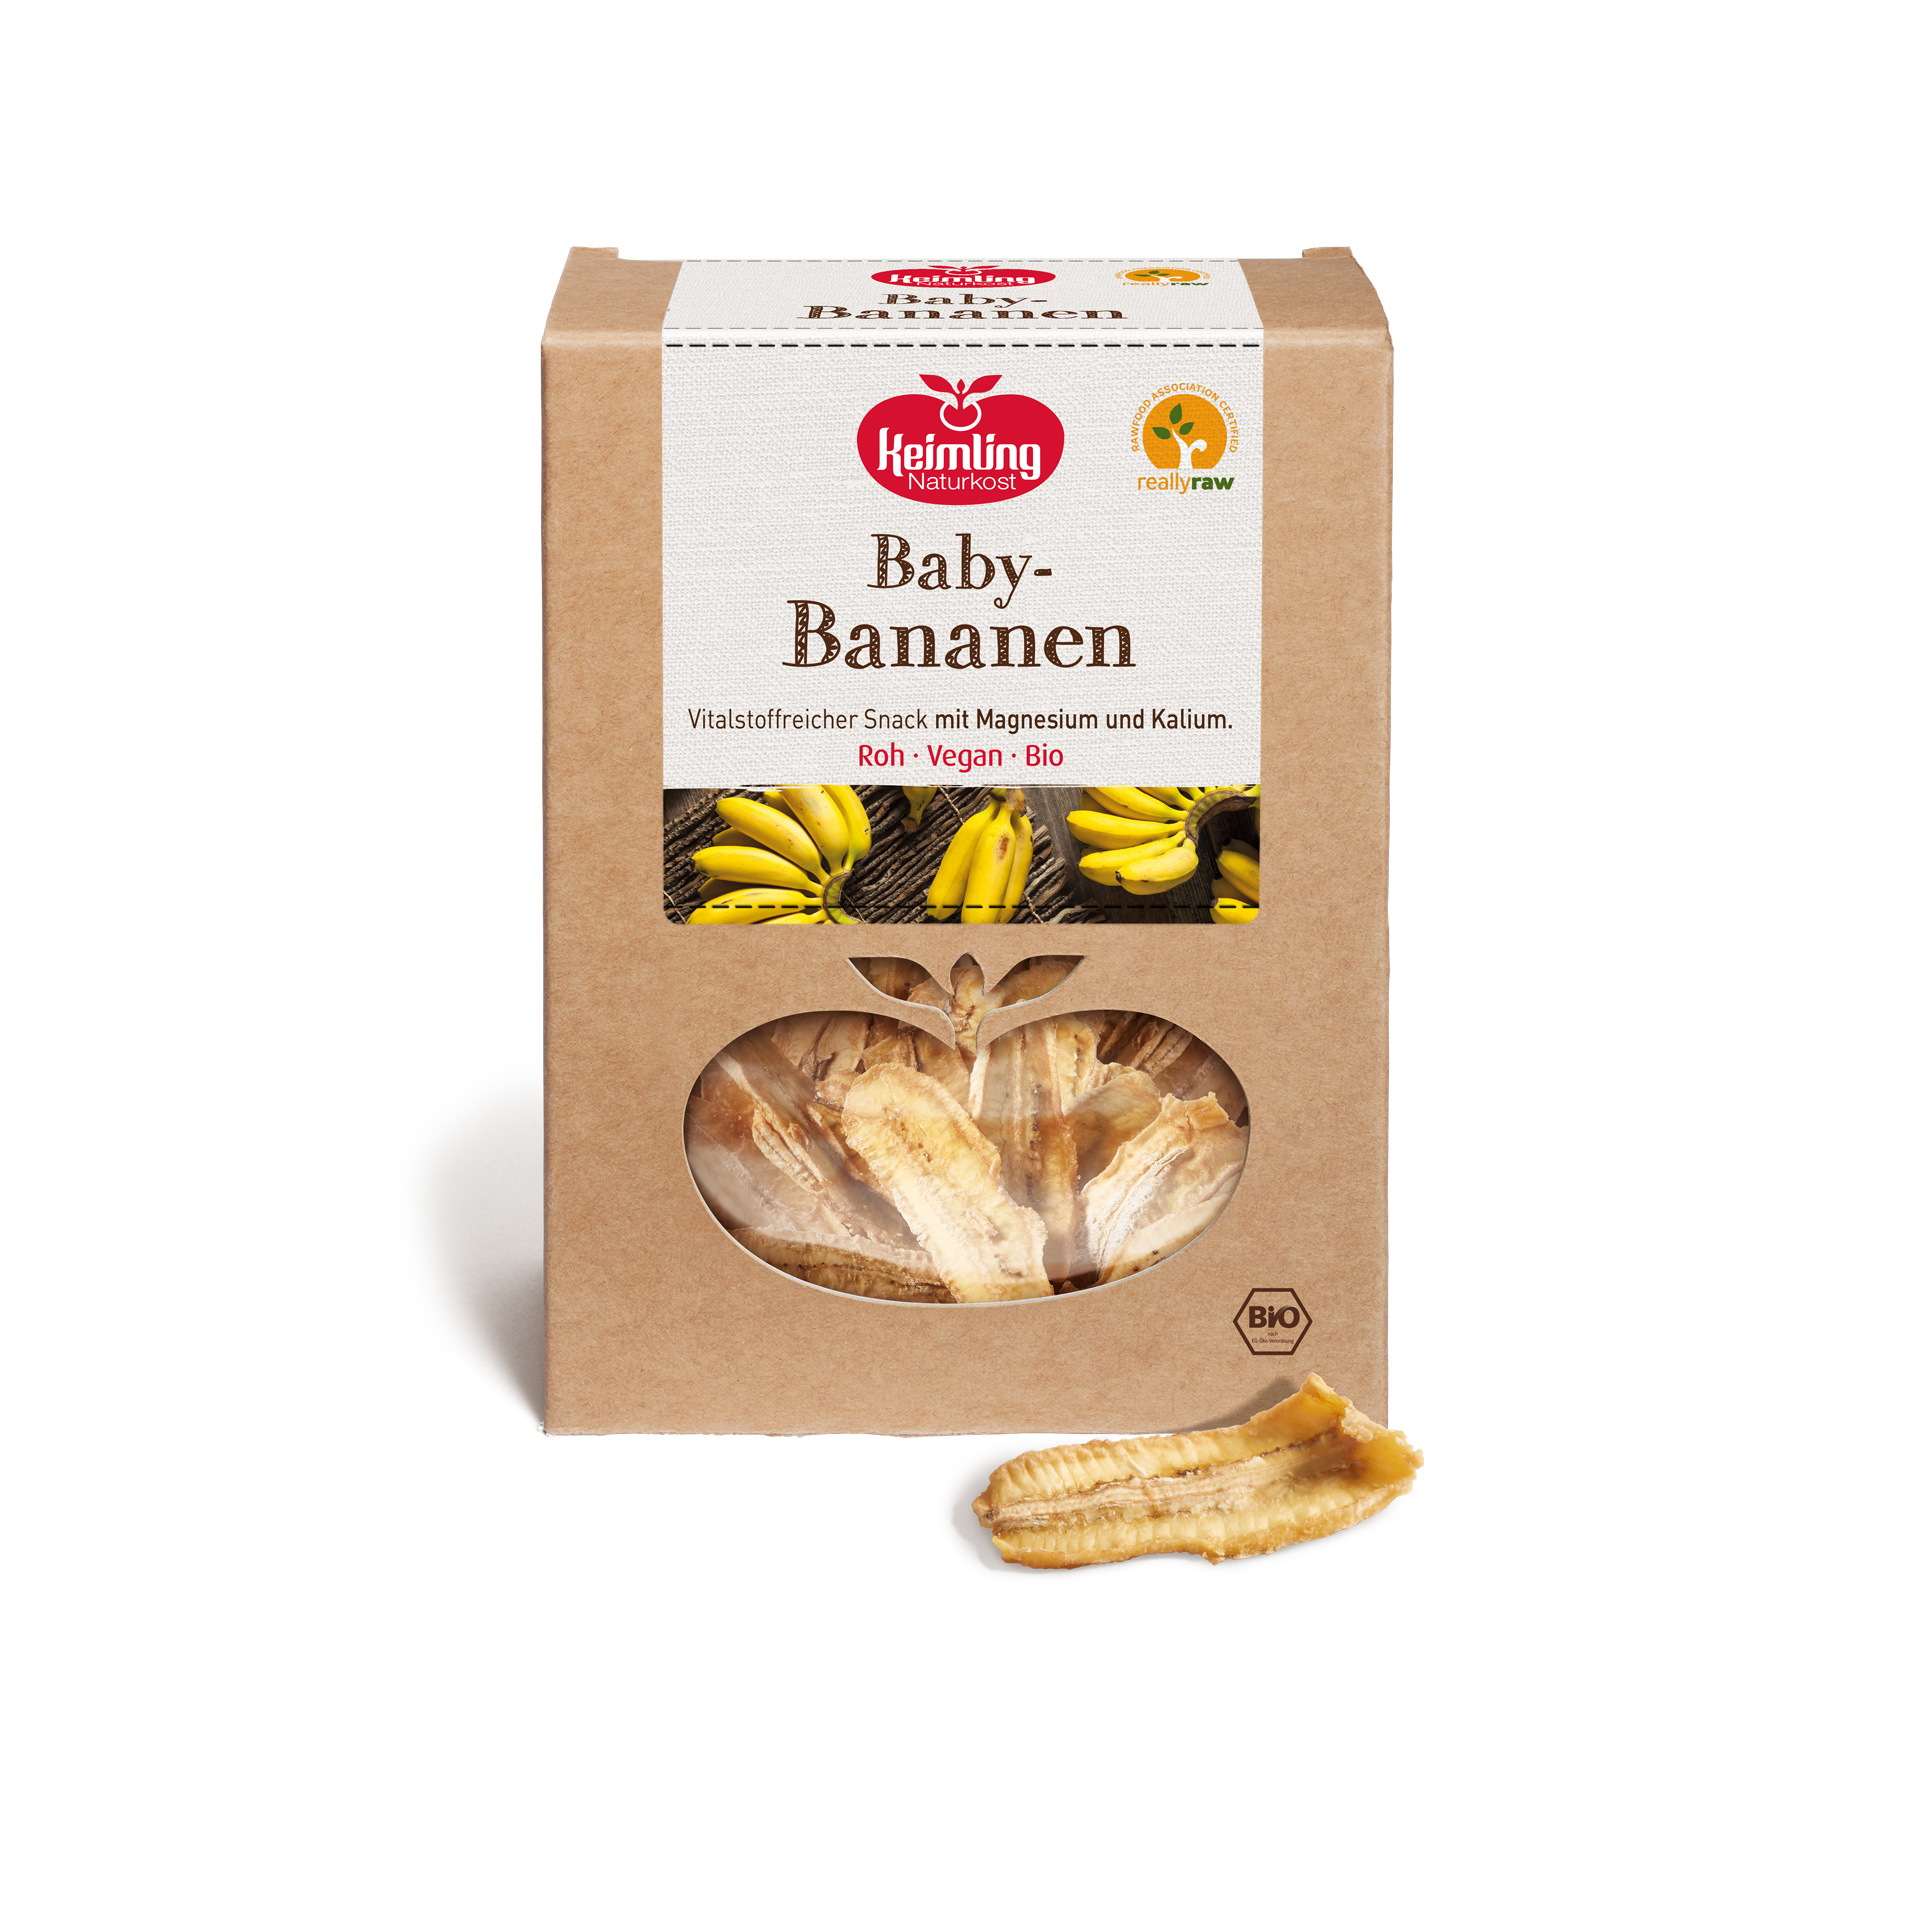 Baby-Bananen von Keimling Naturkost, really raw zertifiziert